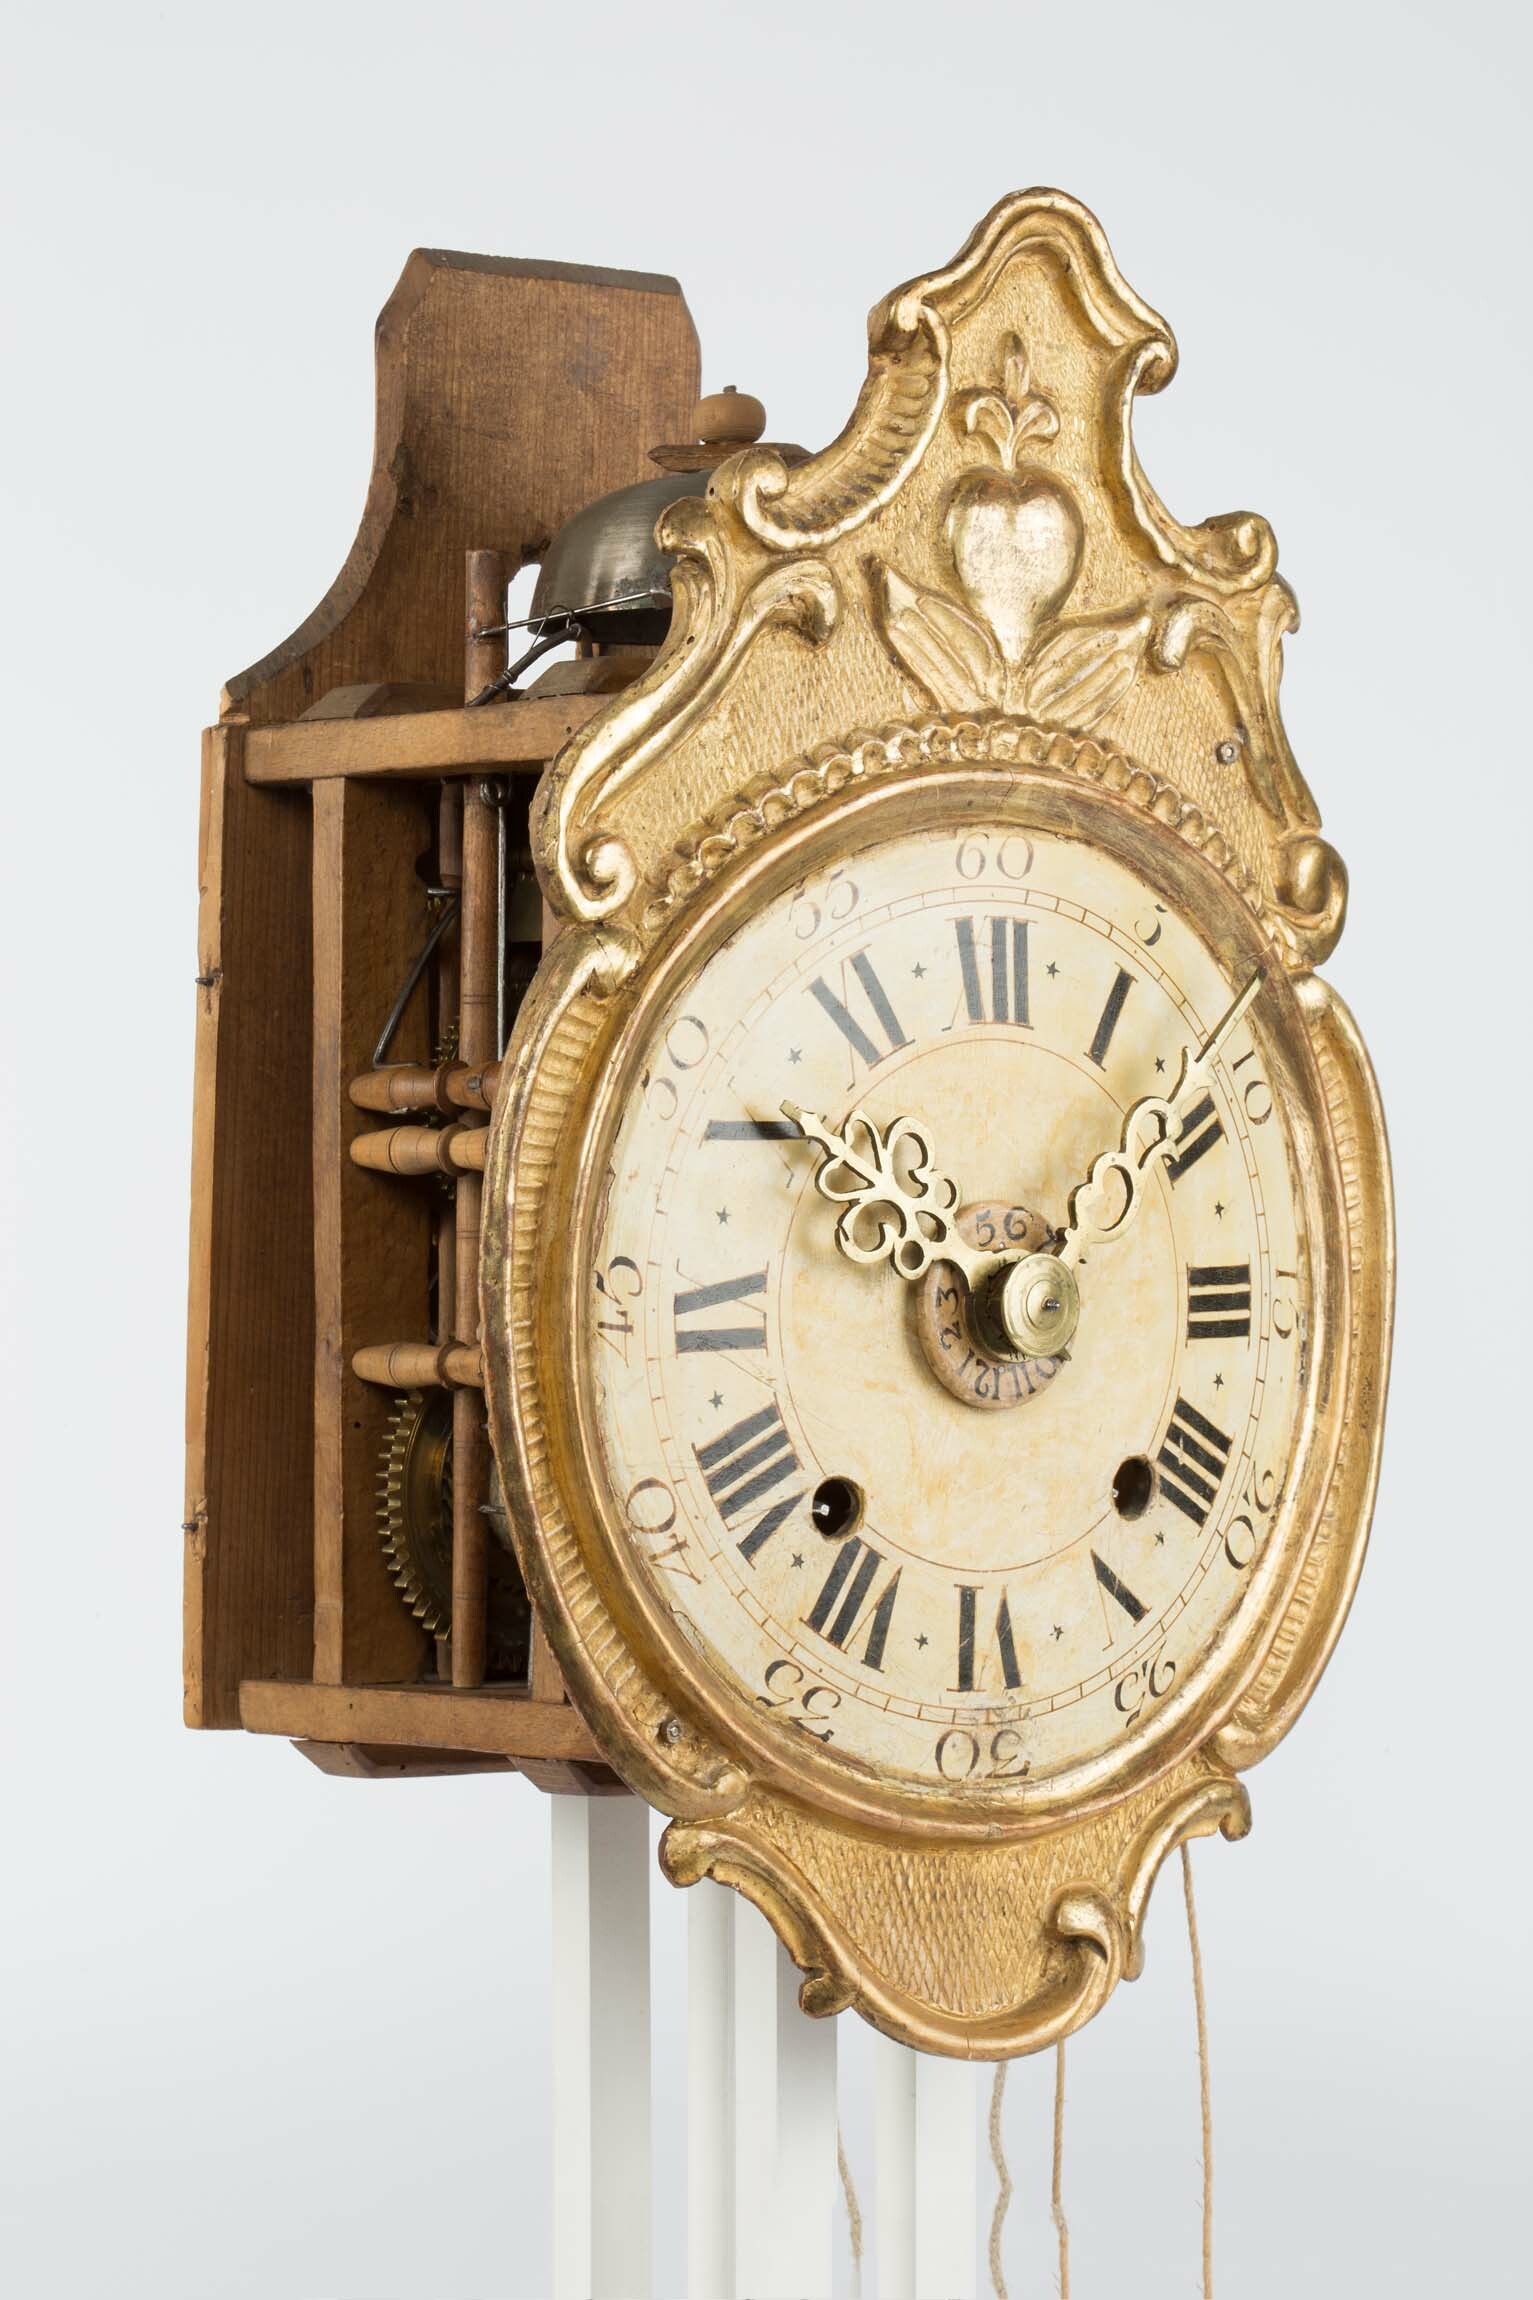 Uhr mit geschnitztem Schild, Johannes Schertzinger, wohl Rötenbach, um 1790 (Deutsches Uhrenmuseum CC BY-SA)